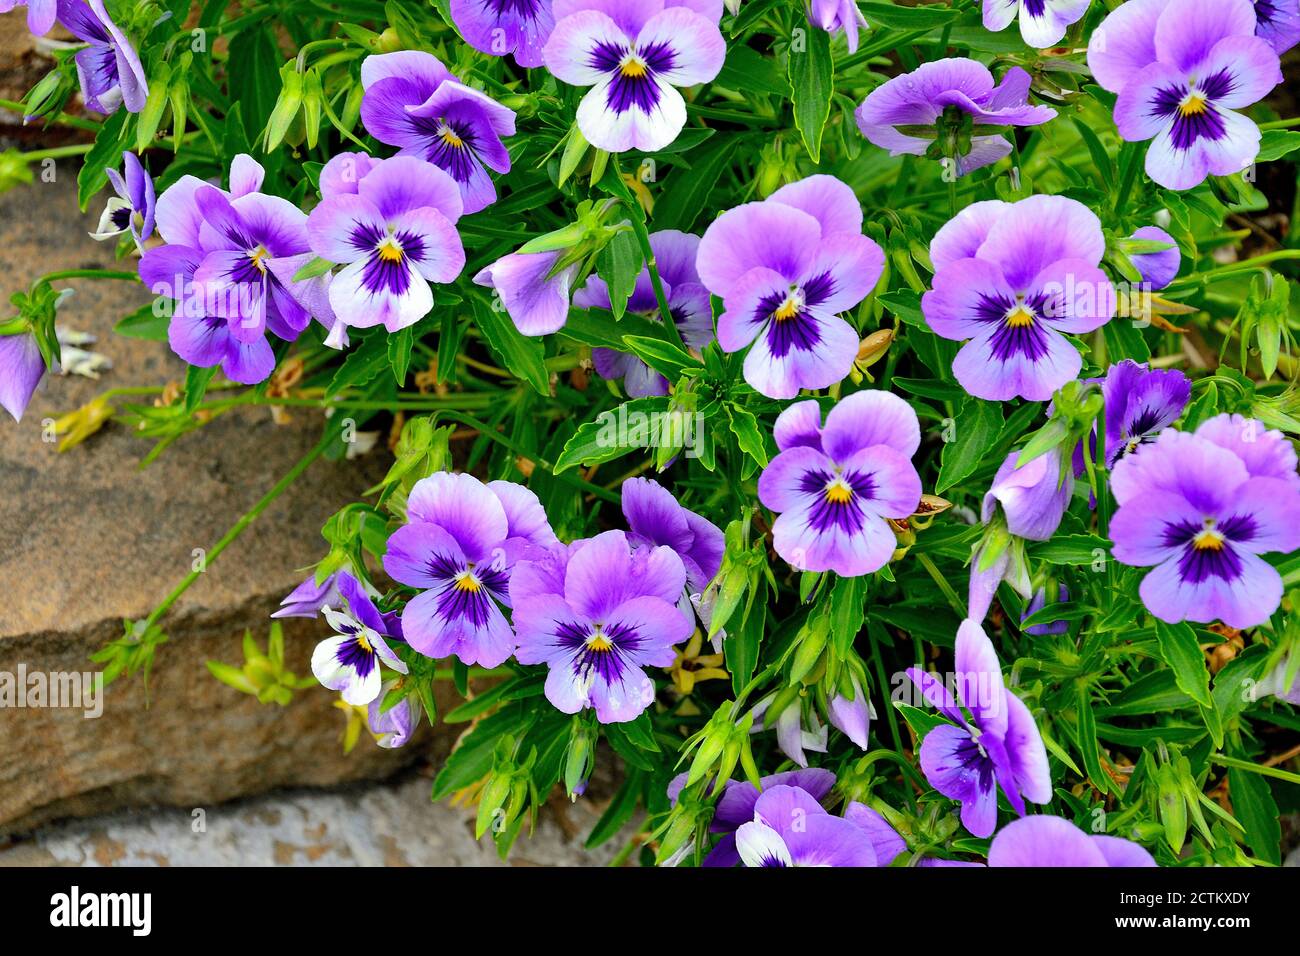 Nahaufnahme von bunten Stiefmütterchen Blumen im Garten. Wissenschaftlicher Name der Garten Stiefmütterchen ist Viola wittrockiana. Dekorative Hybridpflanze mit violetten Blütenblättern b Stockfoto